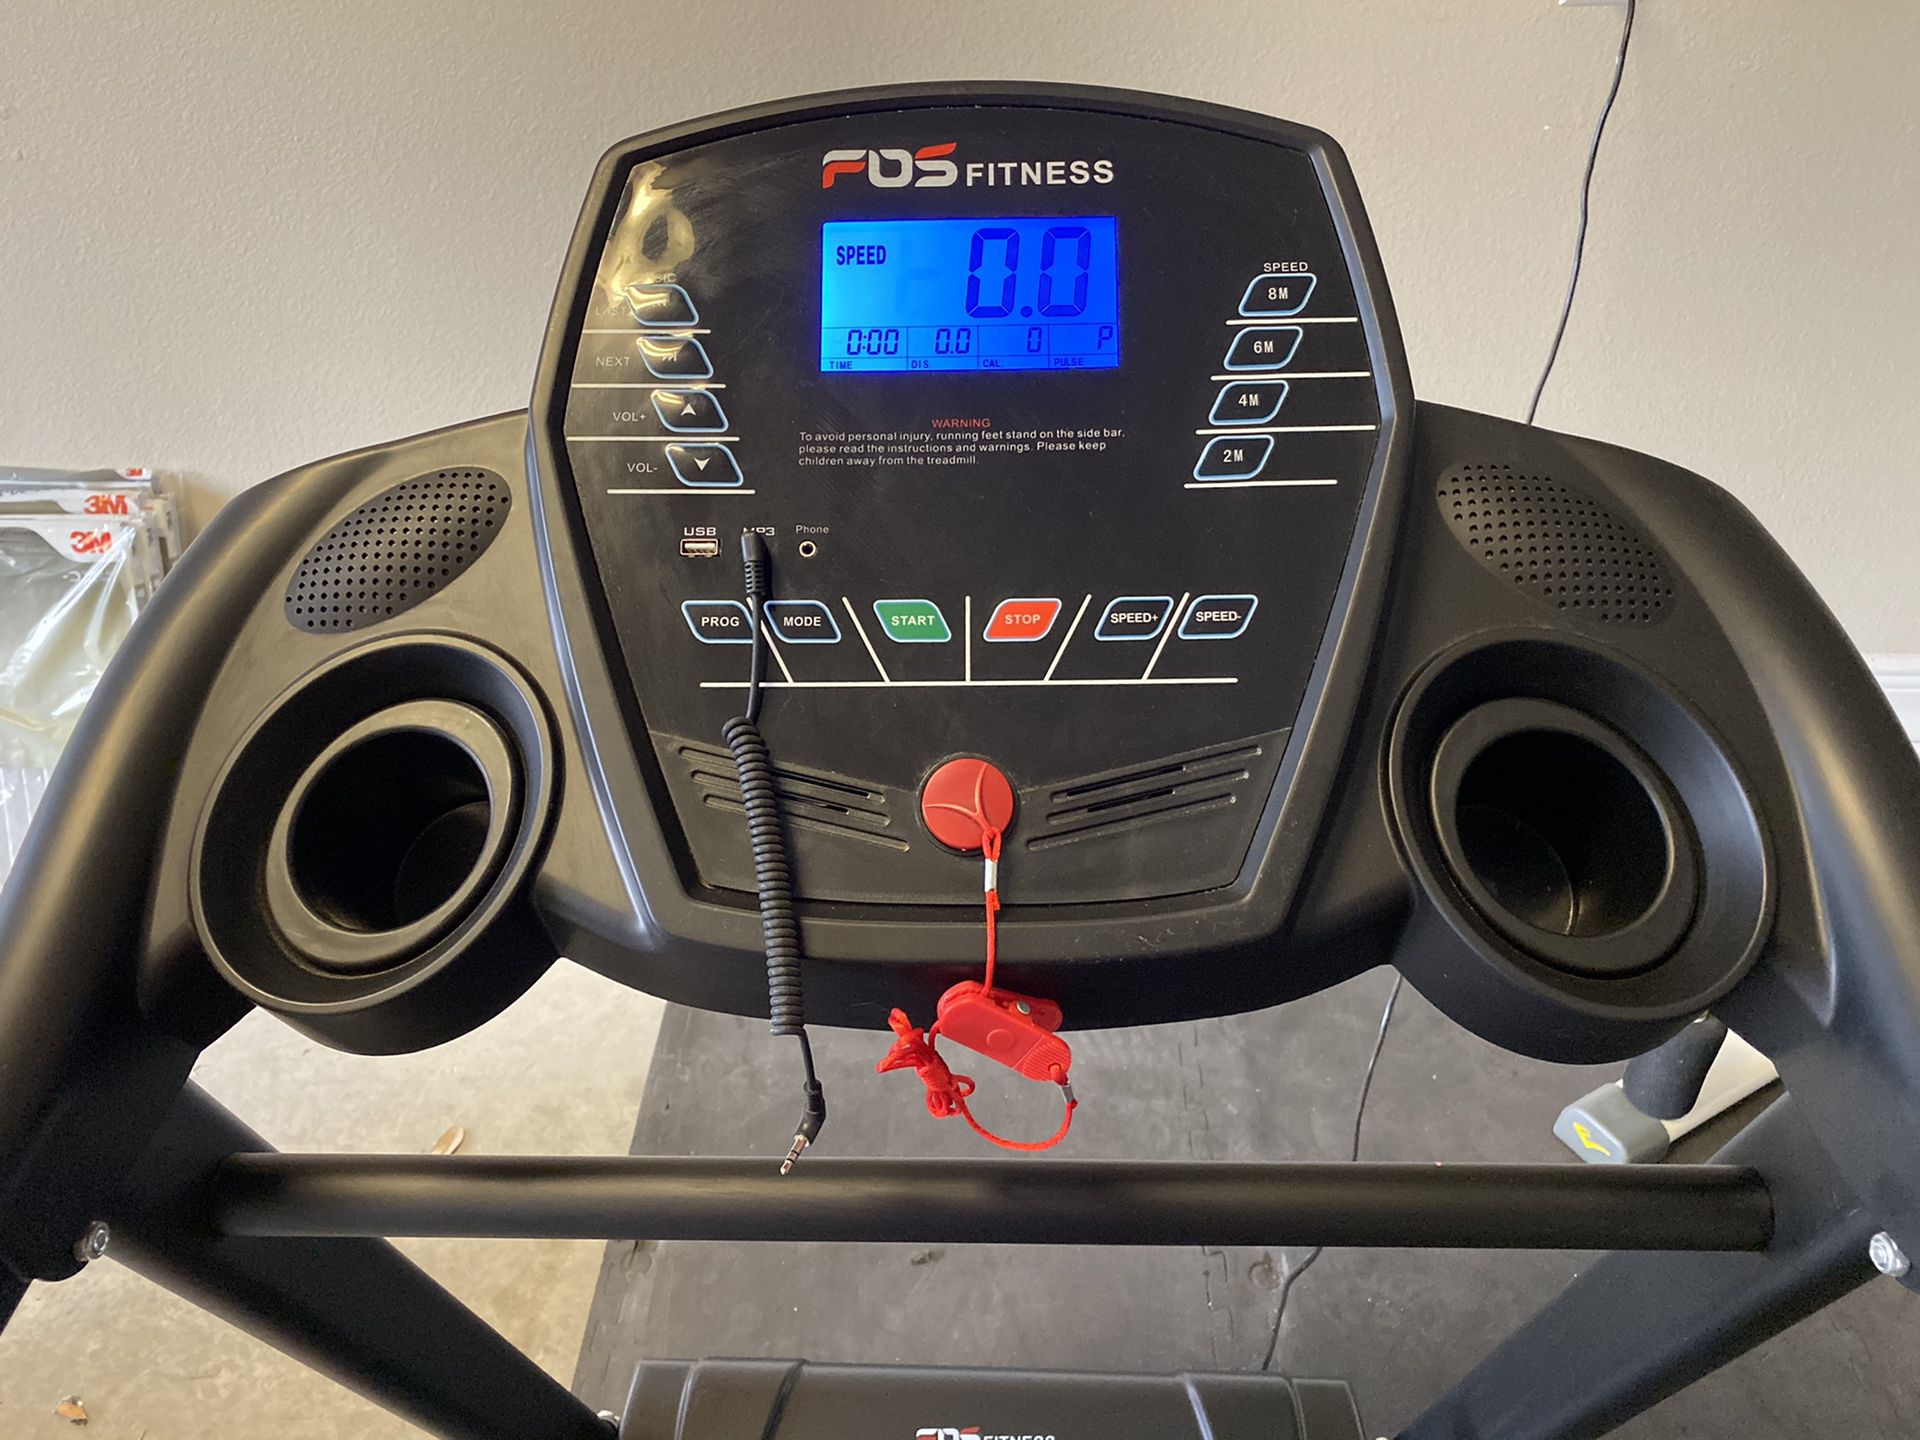 Fos fitness treadmill